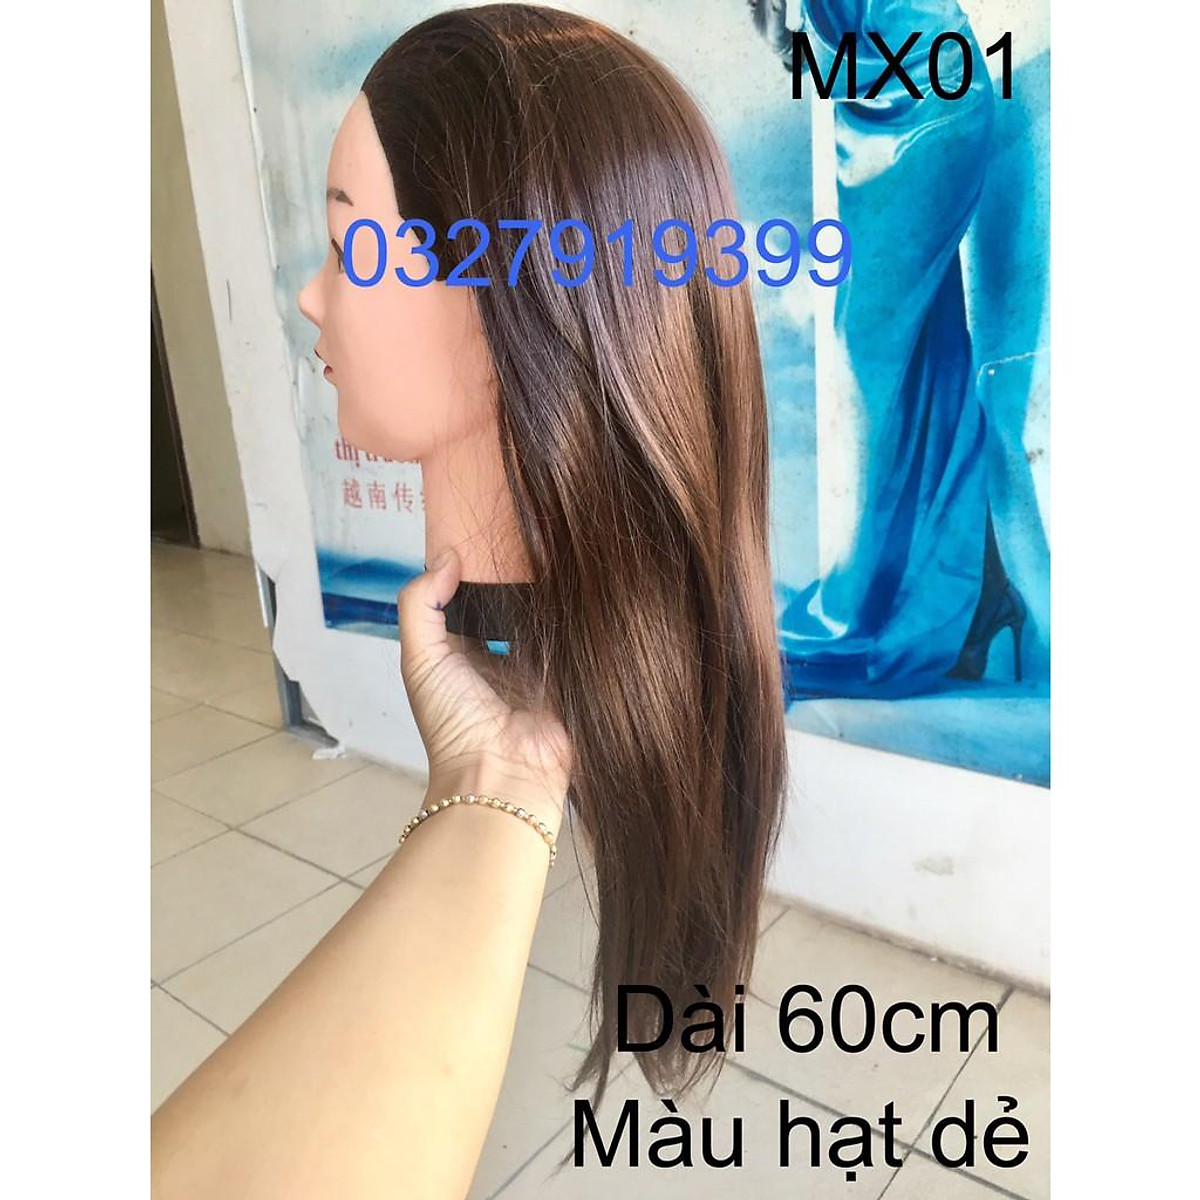 Đầu ma nơ canh tóc giả 60cm  65cm dùng tập luyện cho người mới vào nghề   Shopee Việt Nam